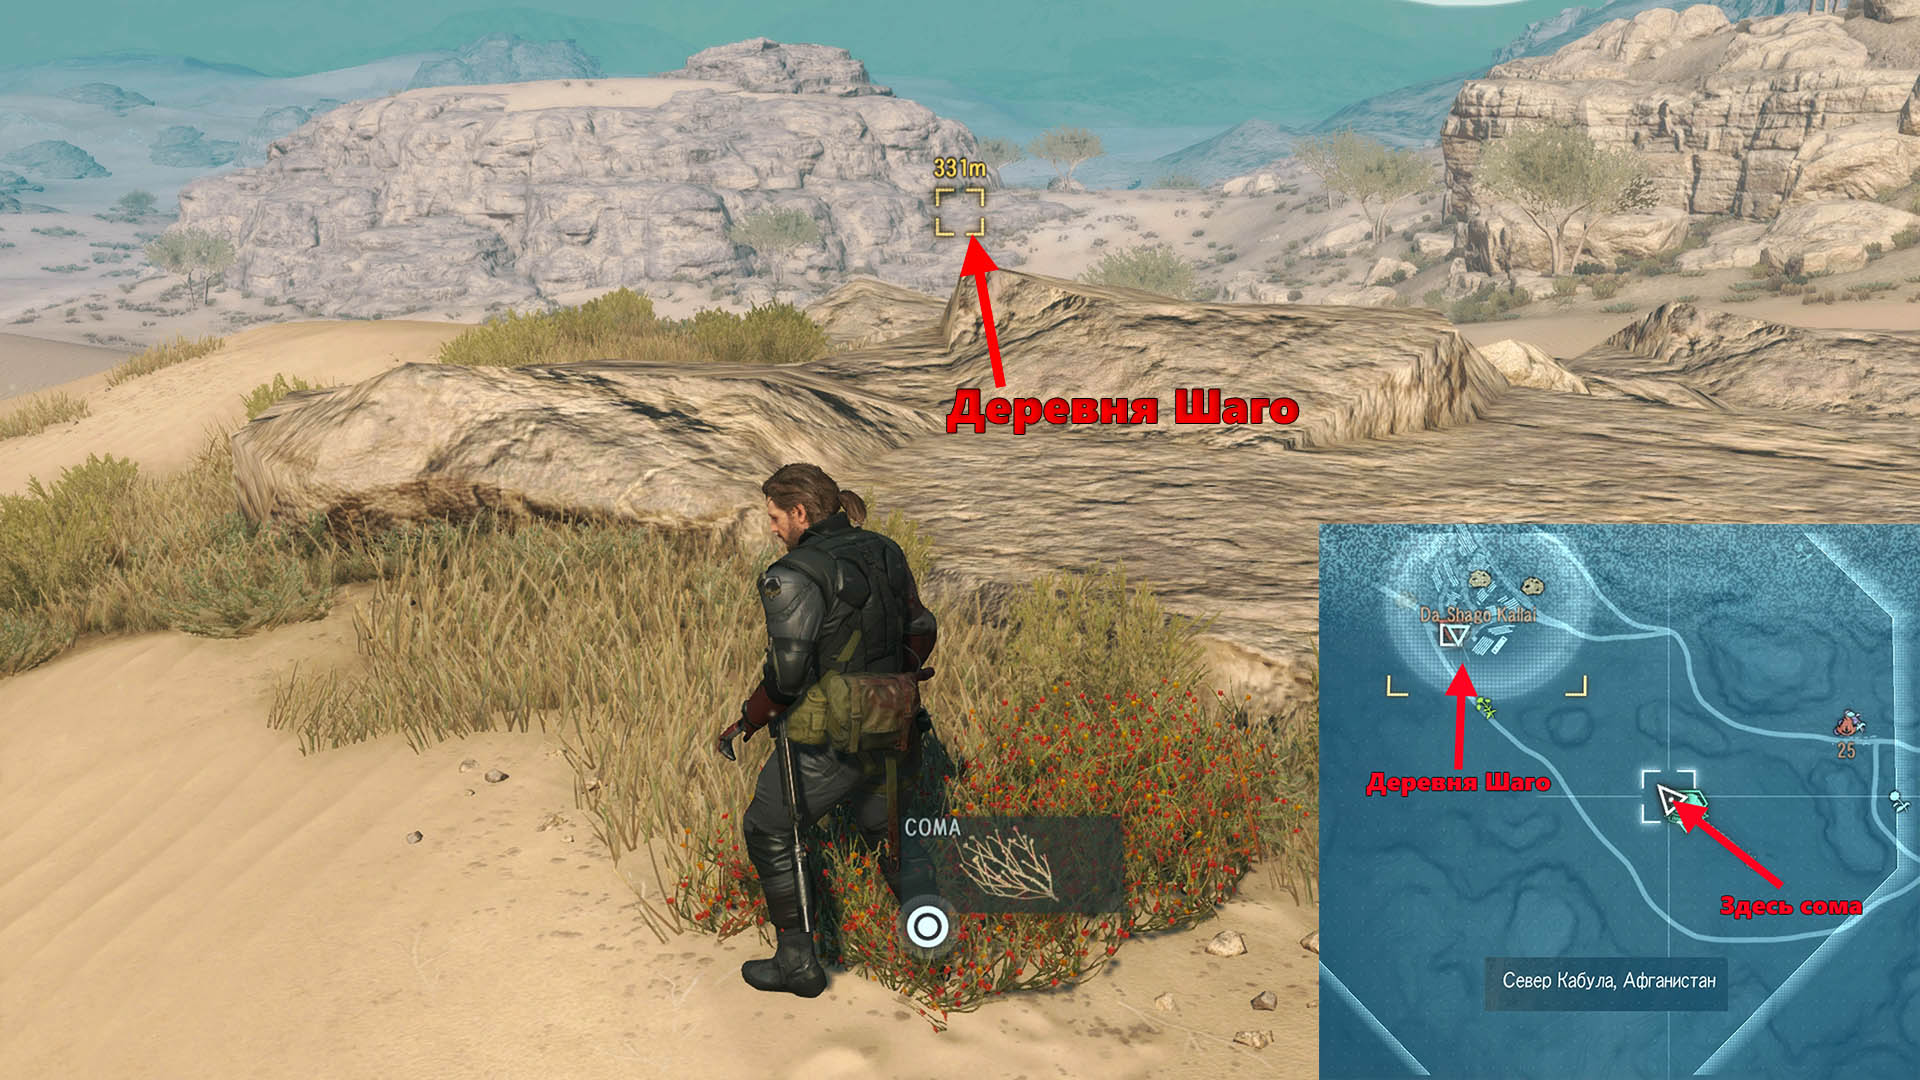 Metal Gear Solid V: The Phantom Pain Собрана сома, произраставшая в пустыне между деревней Шаго и крепостью Спугмай